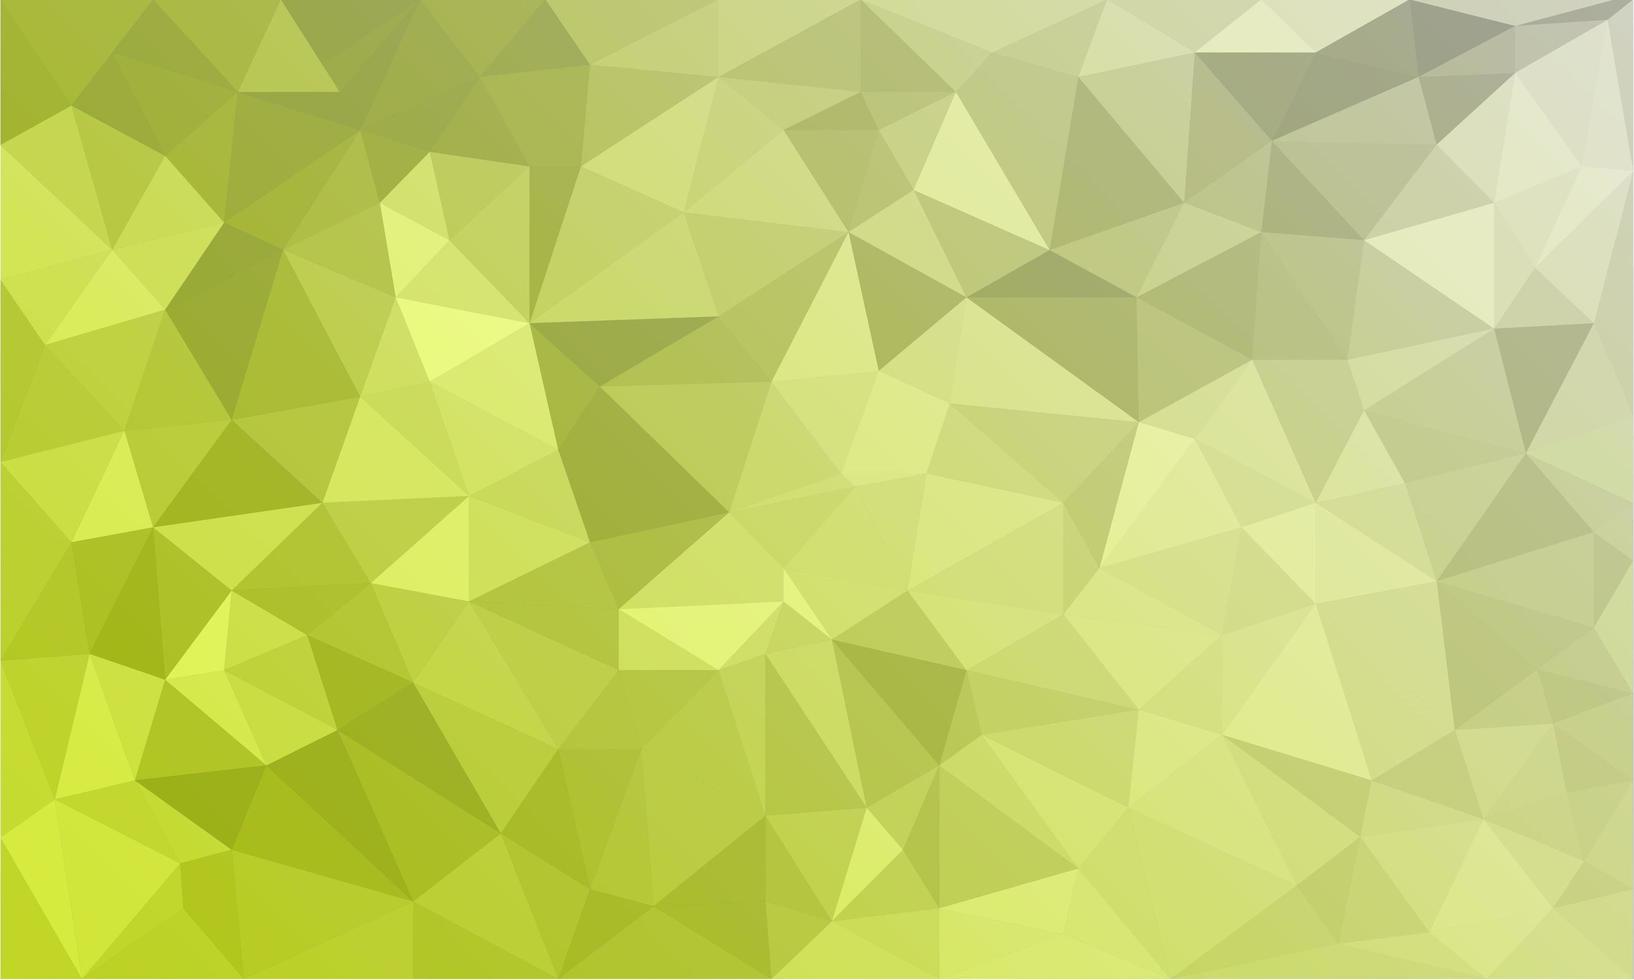 abstrakter gelber Hintergrund, niedrige polystrukturierte Dreiecksformen in zufälligem Muster, trendiger Lowpoly-Hintergrund vektor